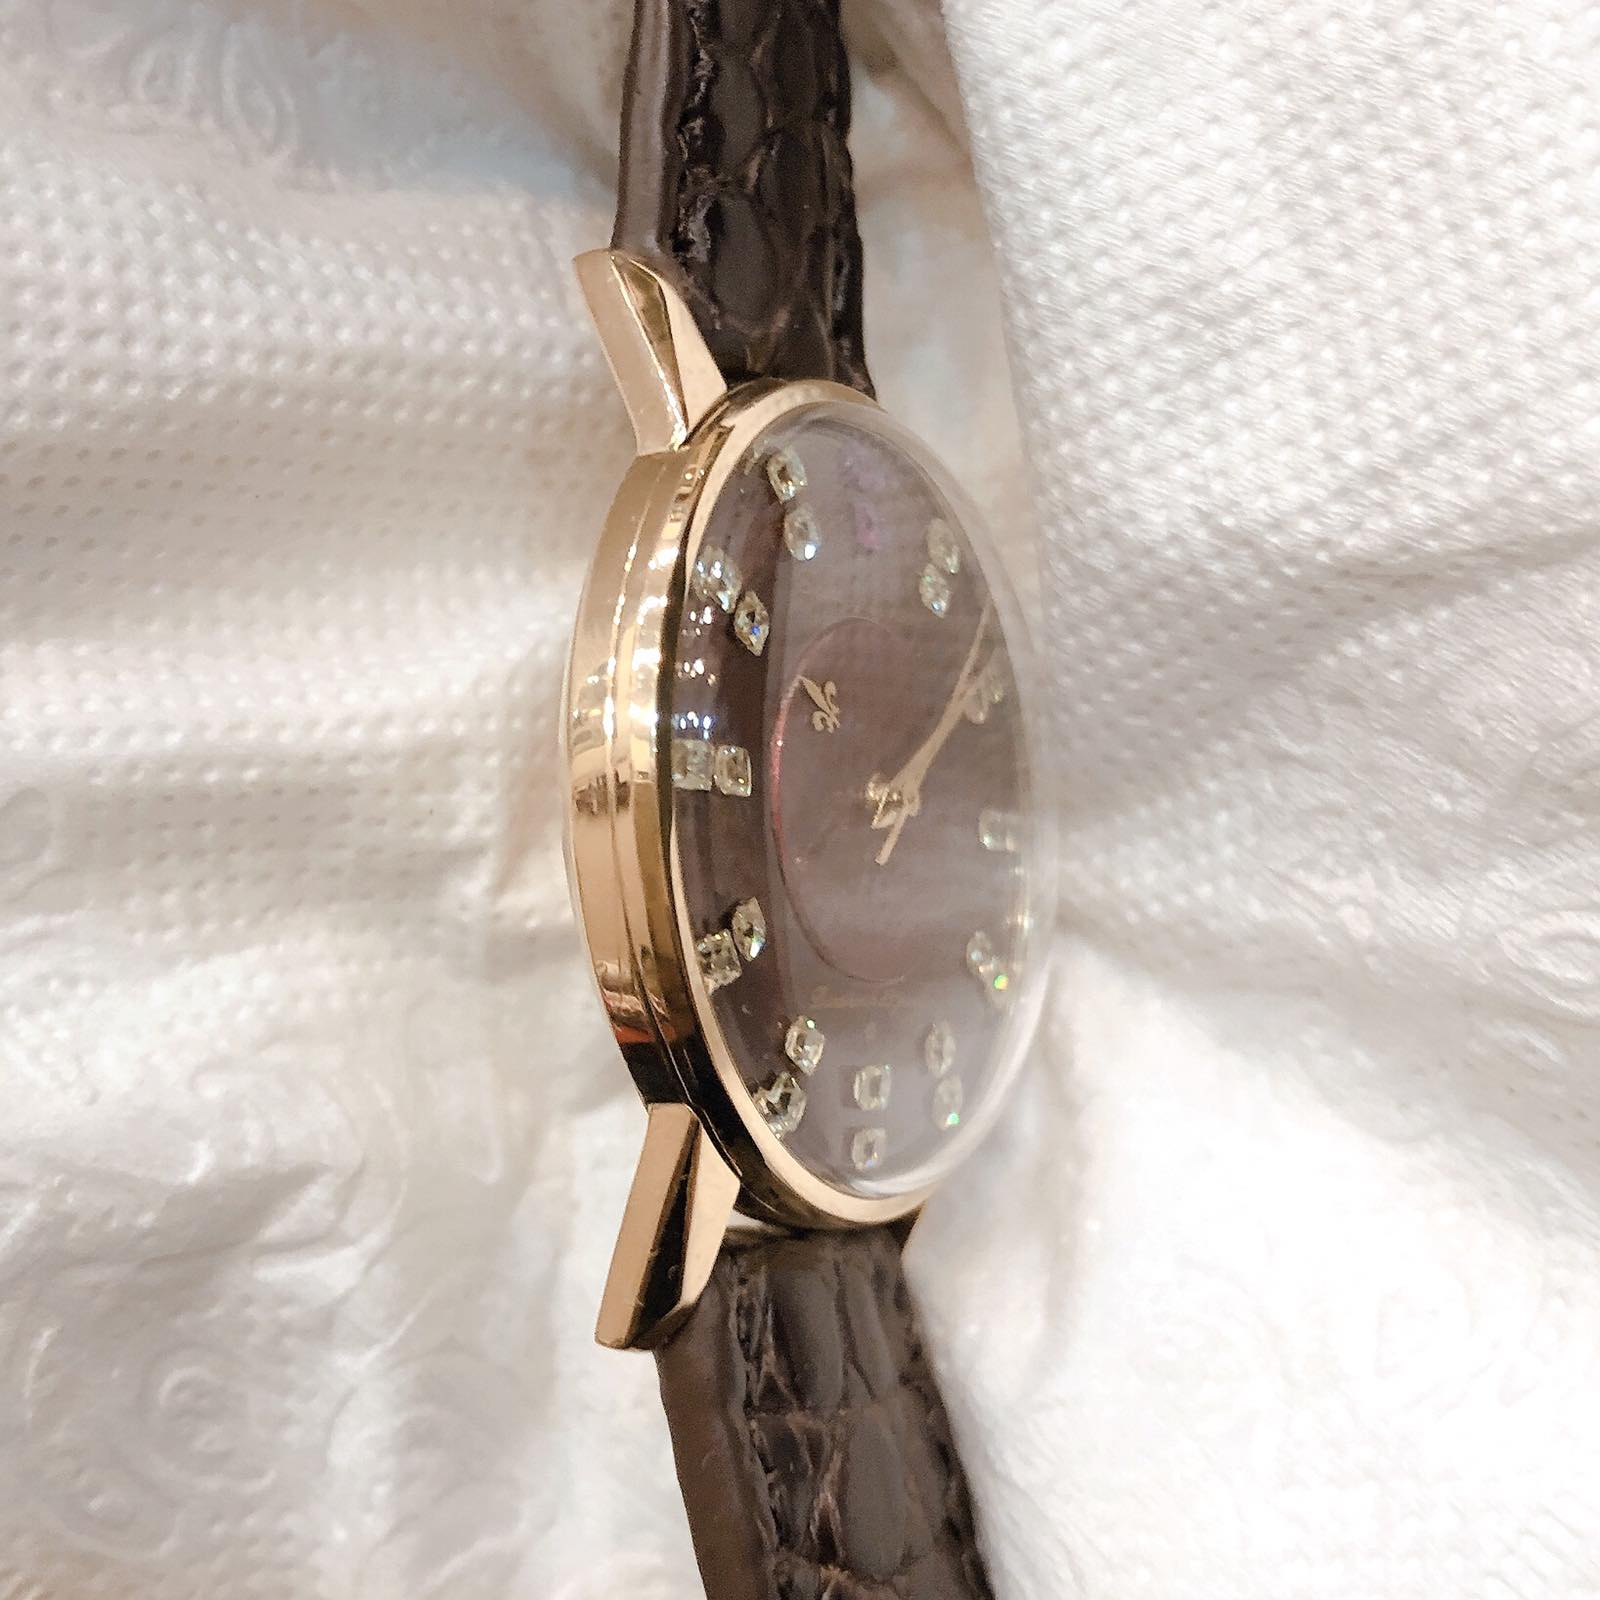 Đồng hồ cổ Seiko Lord Marvel lên dây 14k goldfilled chính hãng Nhật Bản